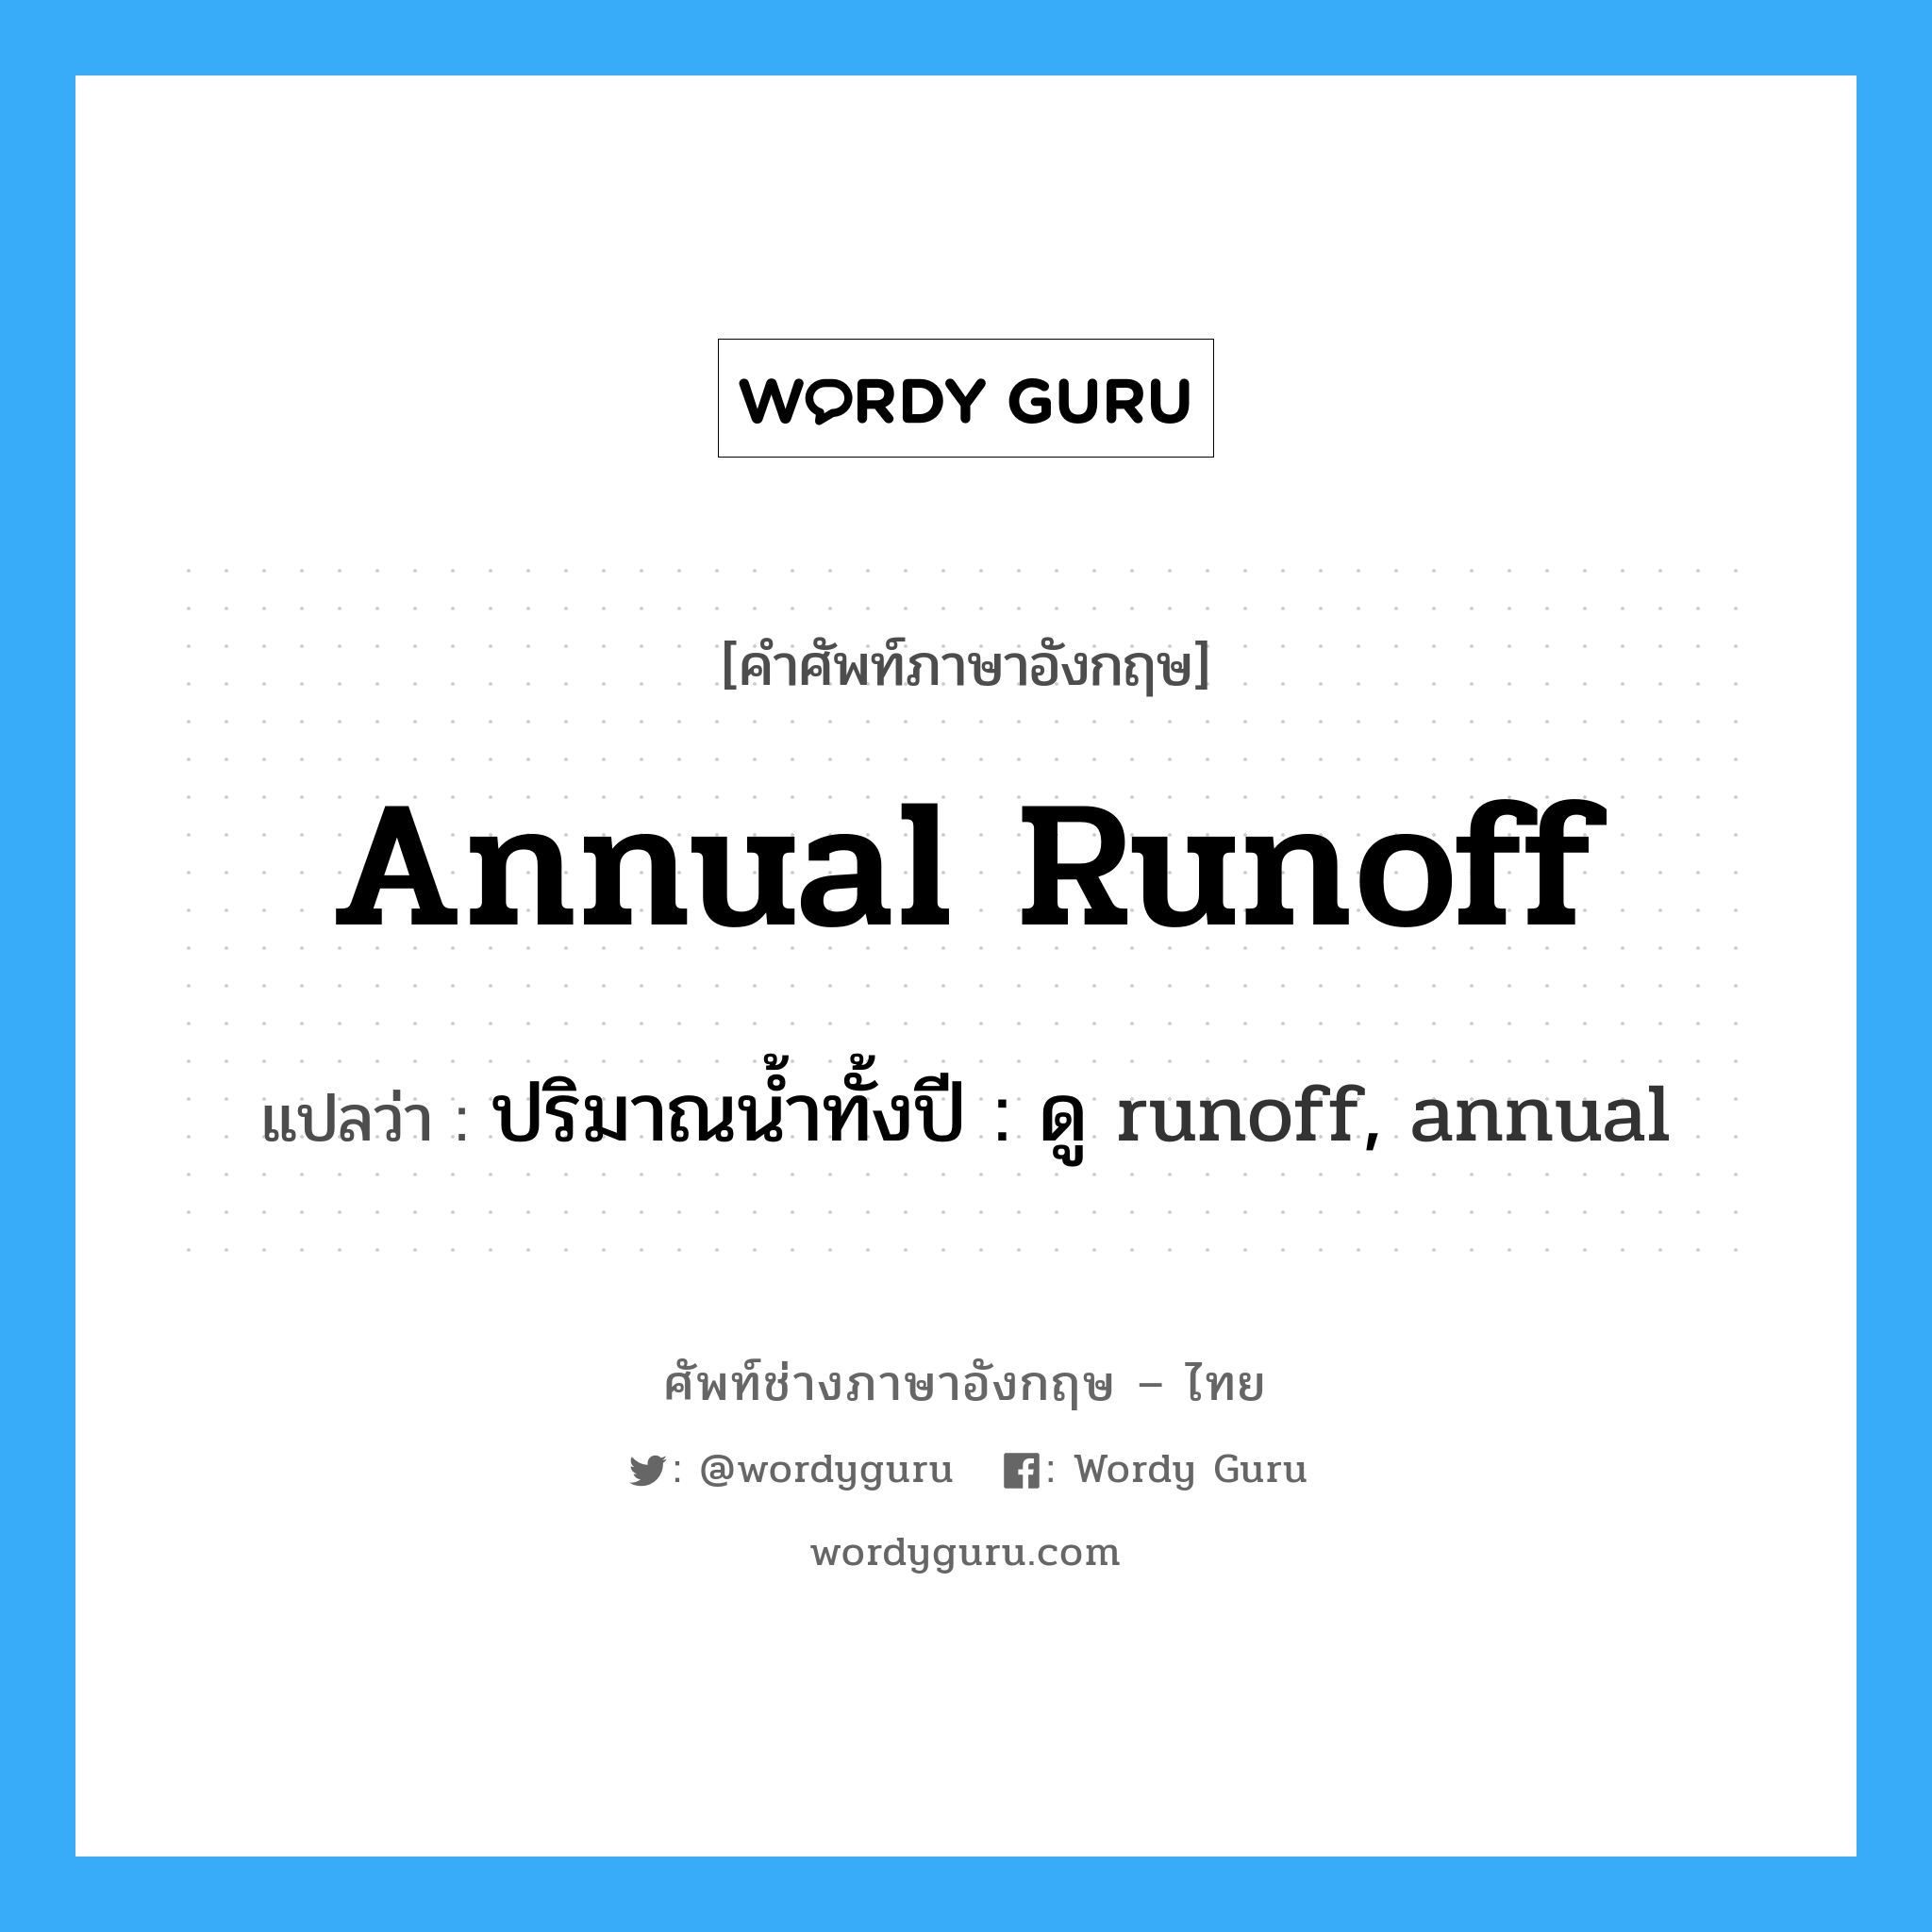 annual runoff แปลว่า?, คำศัพท์ช่างภาษาอังกฤษ - ไทย annual runoff คำศัพท์ภาษาอังกฤษ annual runoff แปลว่า ปริมาณน้ำทั้งปี : ดู runoff, annual